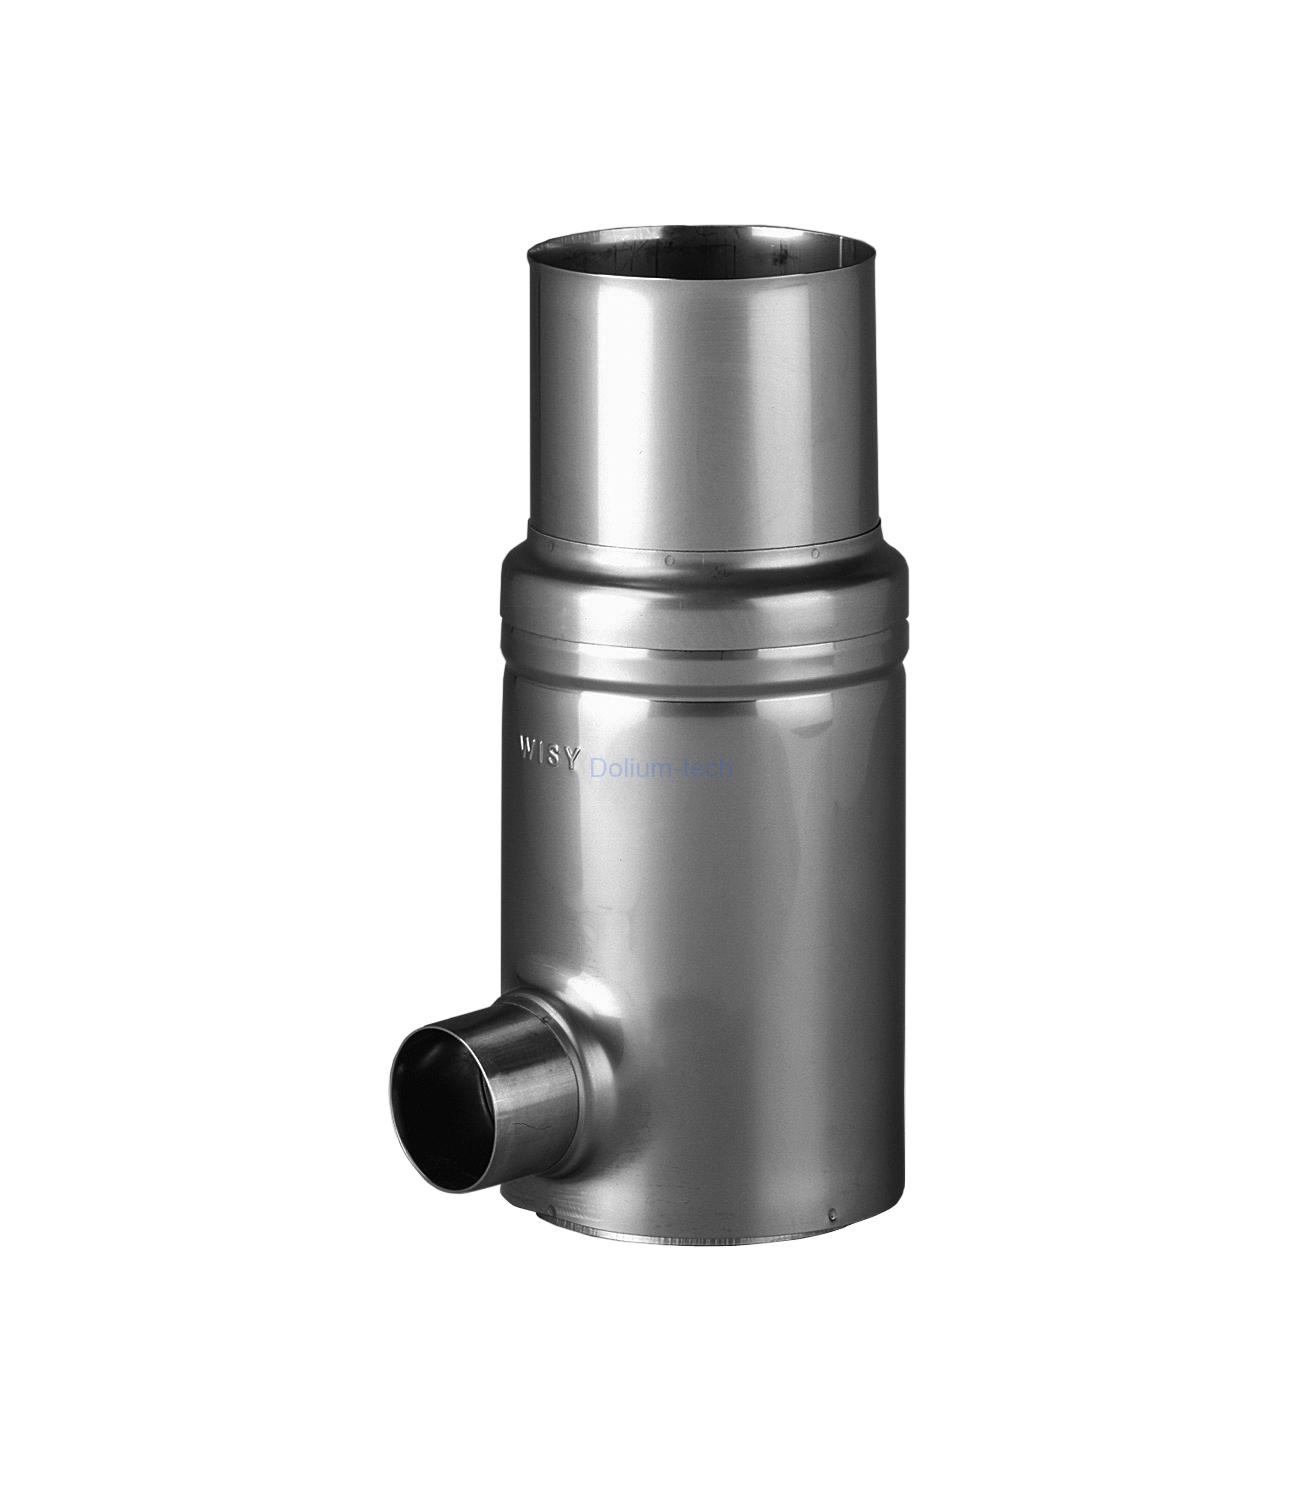 Okapový filtr GRS 76 VA-nerez, filtrační vložka nerez, jemnost 0,44 mm